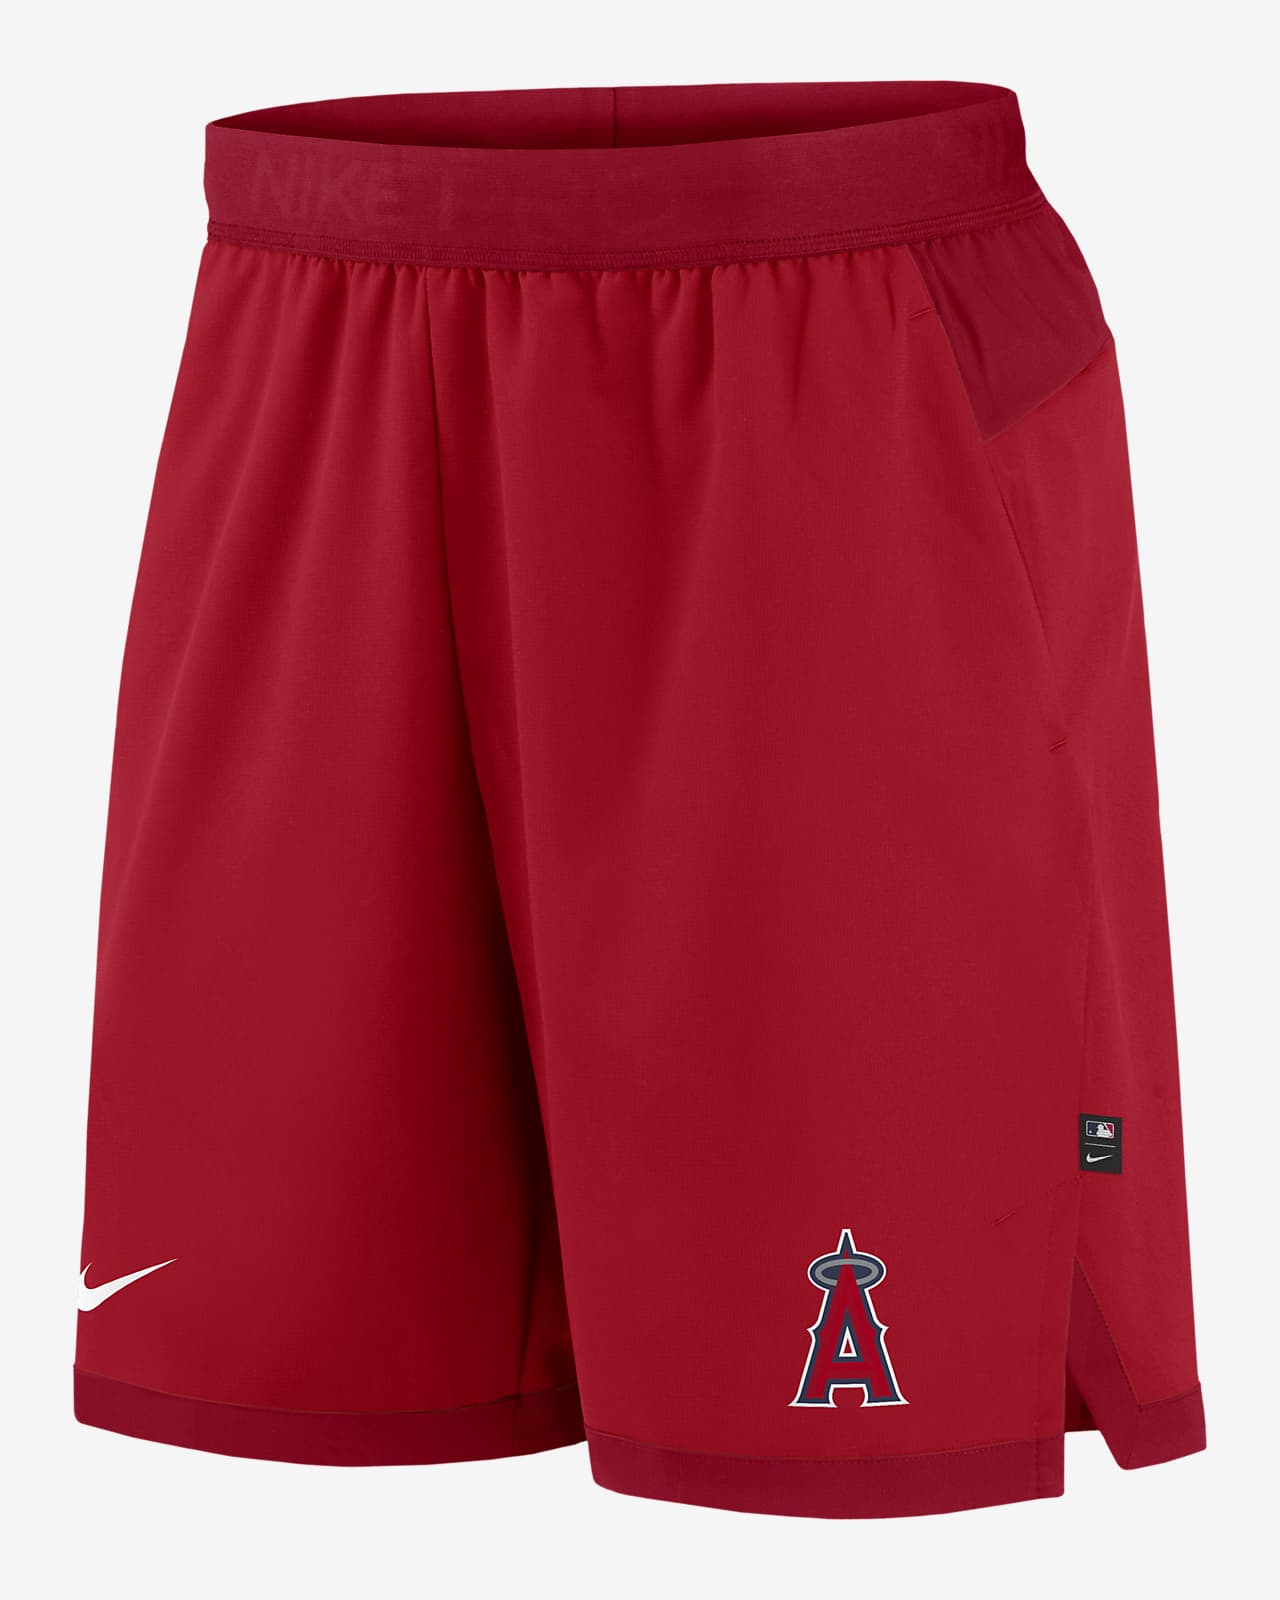 Shorts para hombre Nike Dri-FIT Flex (Los Angeles Angels de MLB)